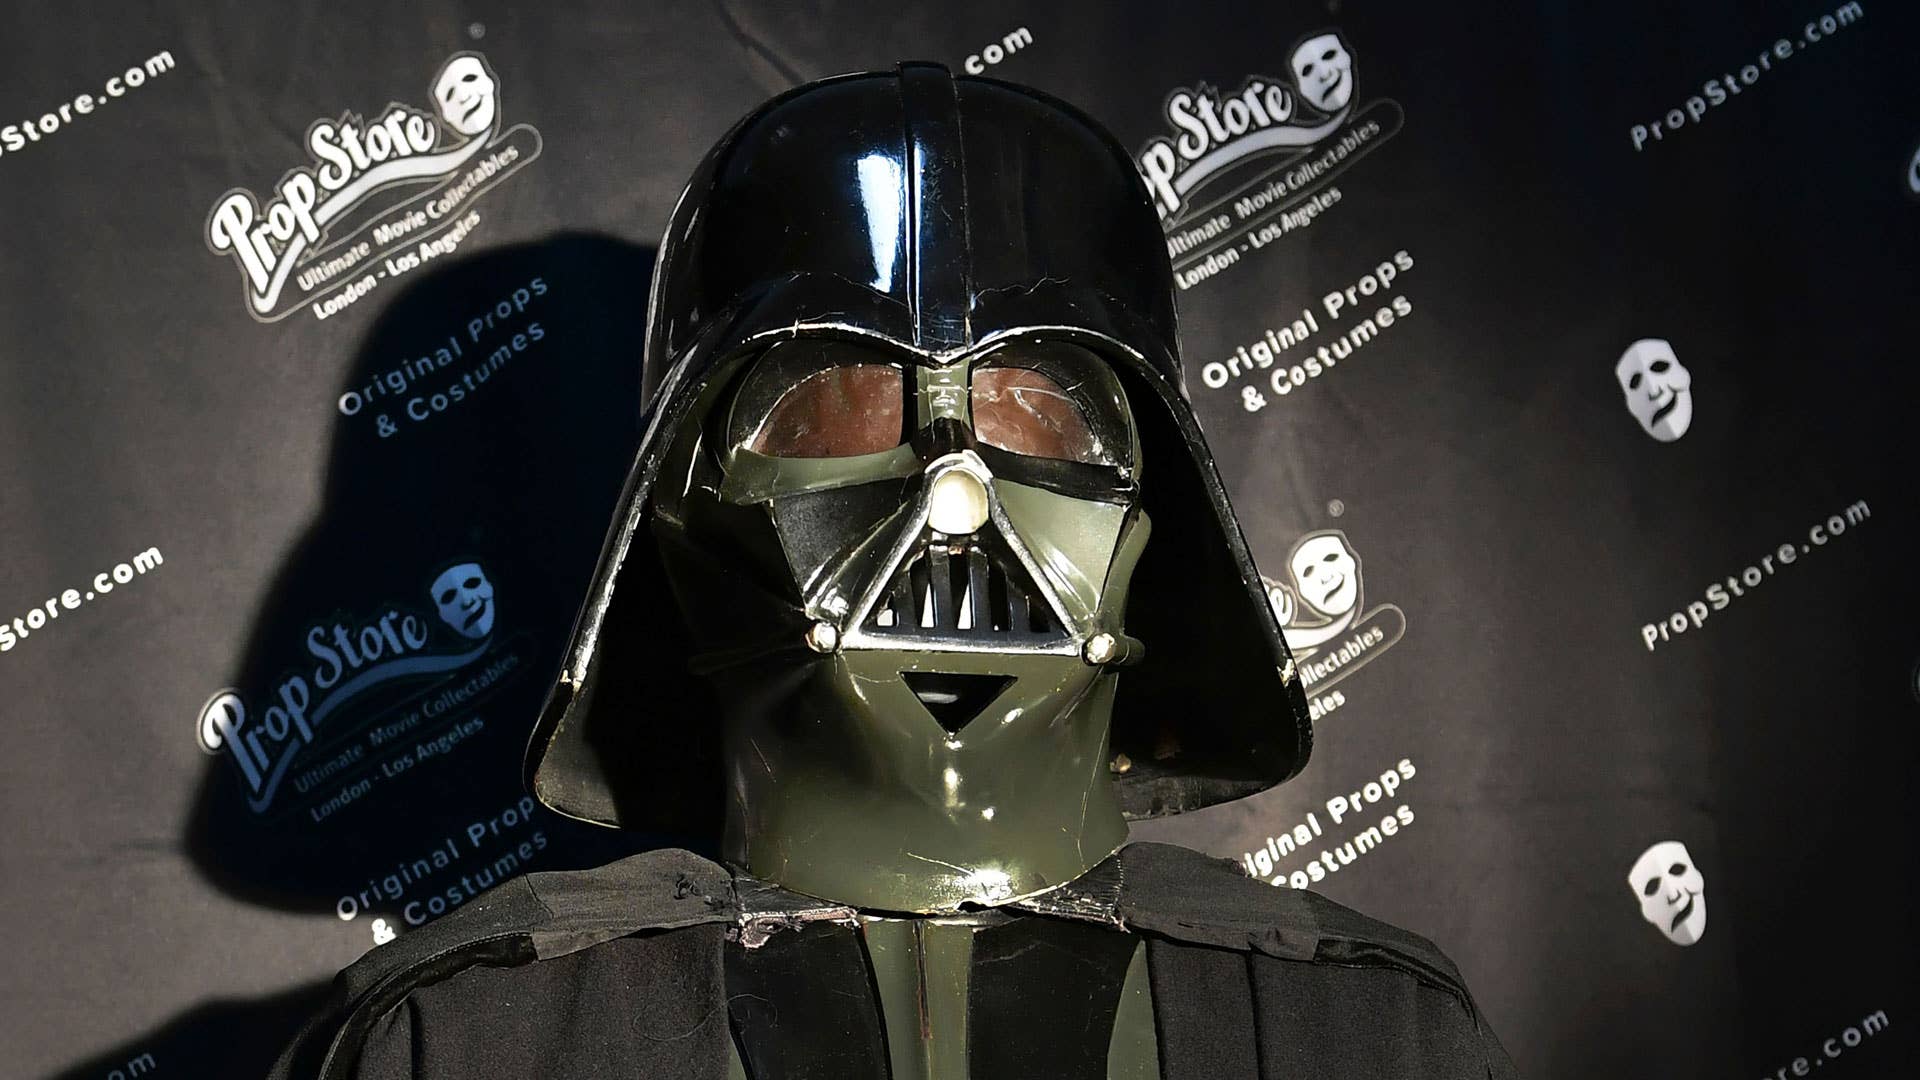 Darth Vader's helmet.